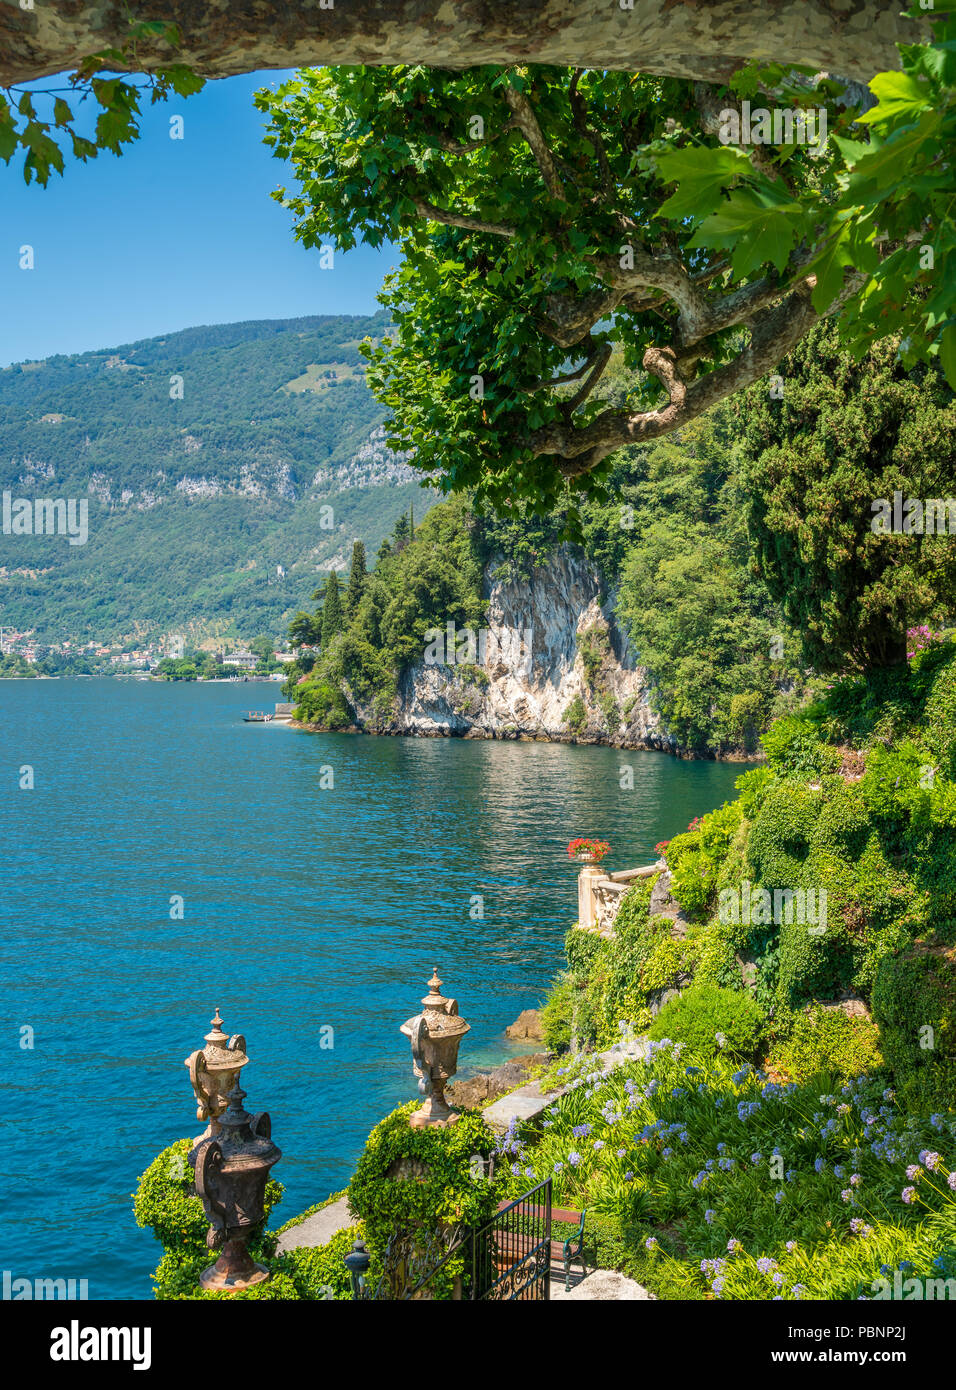 Villa del Balbianello, famous villa in the comune of Lenno, overlooking Lake Como. Lombardy, Italy. Stock Photo